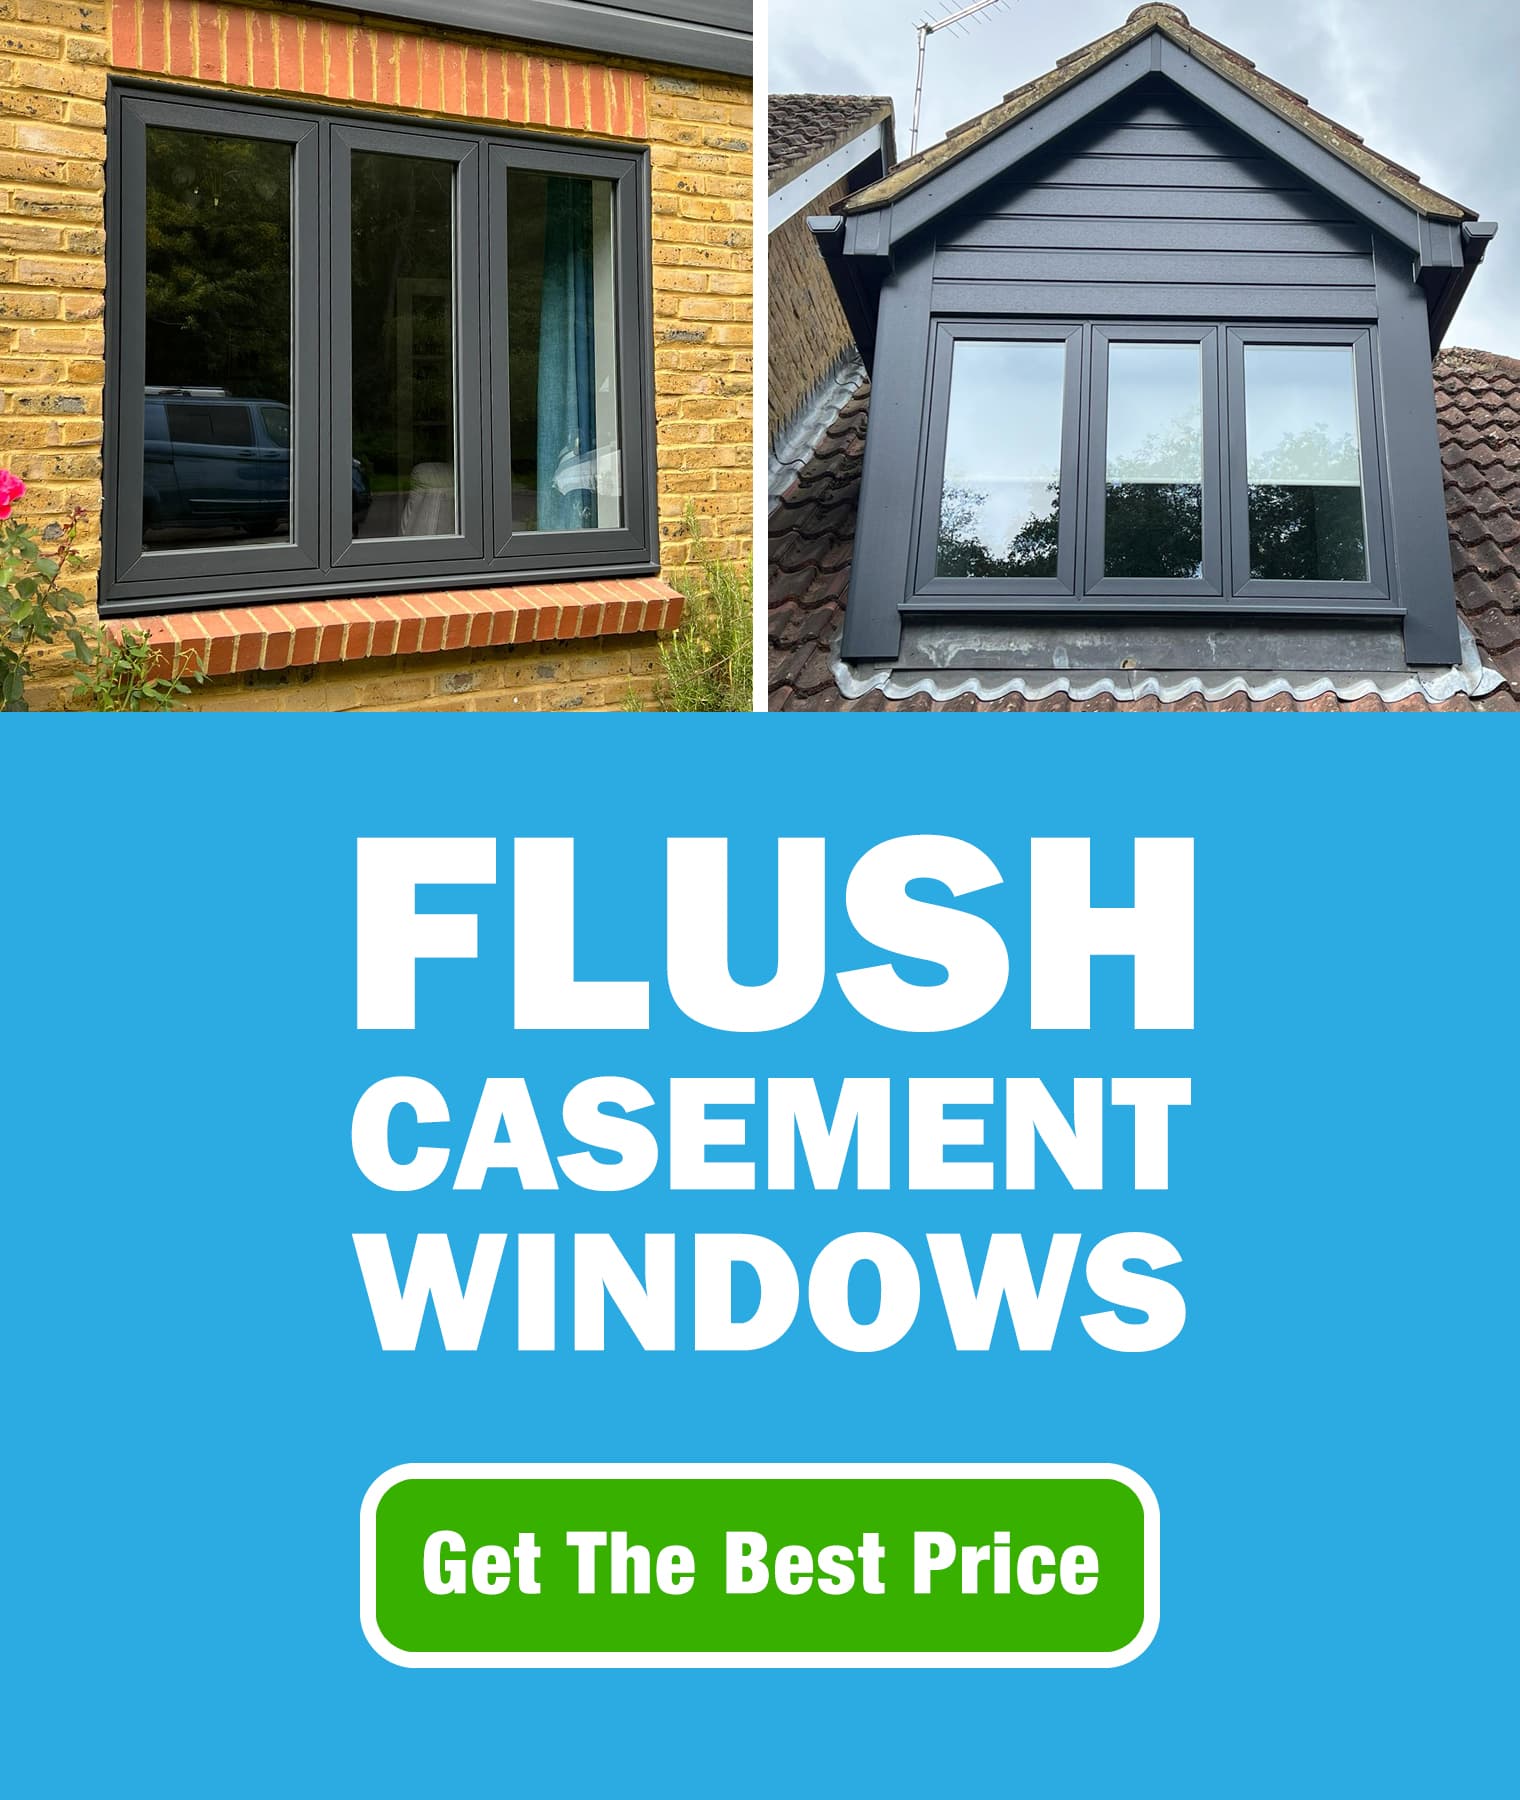 Flush casement windows mobile banner